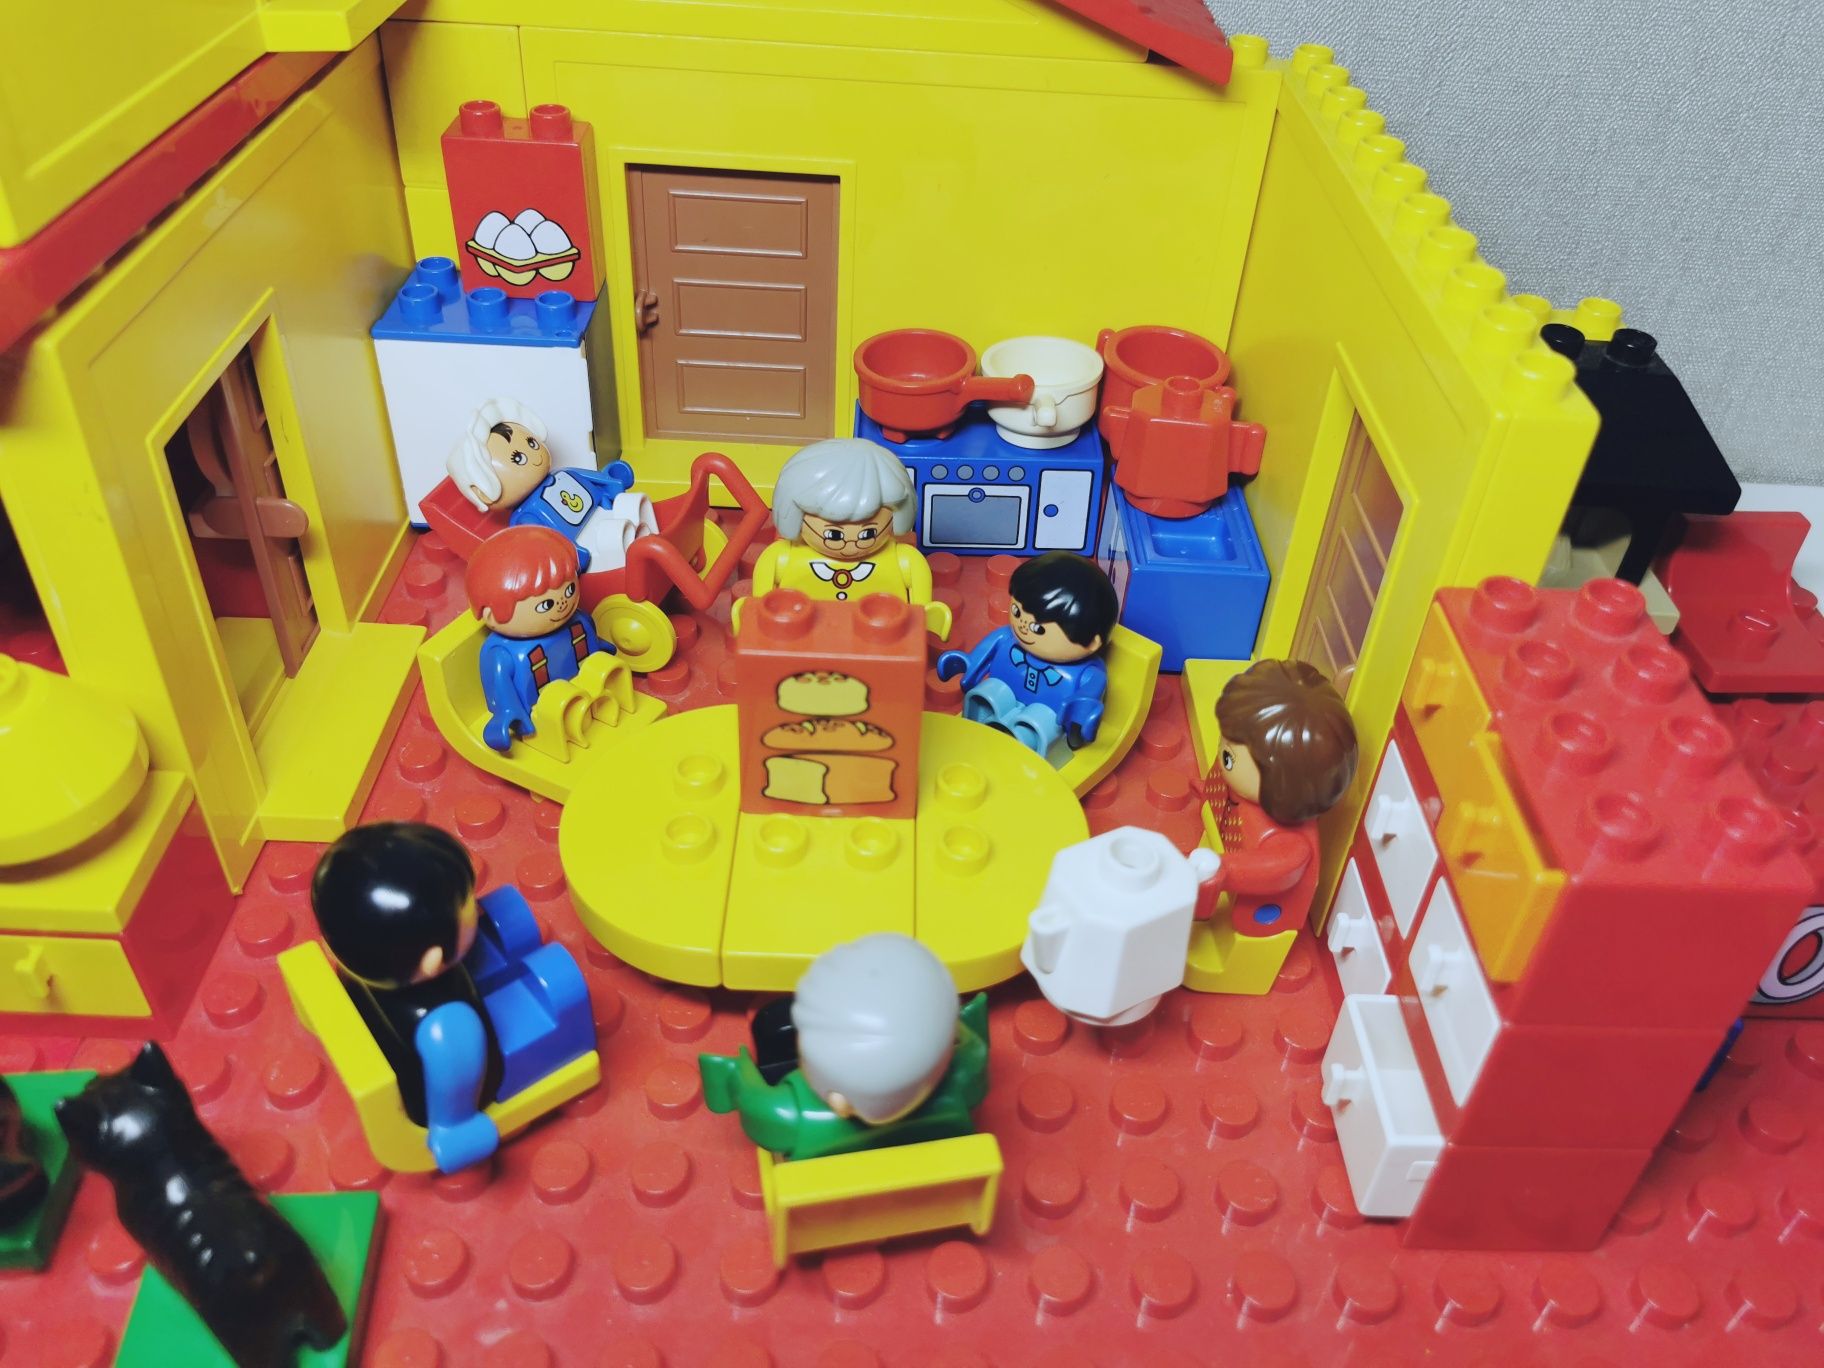 Lego Duplo #9152 Сімейний будинок дом семья рік випуску 1988 оригінал